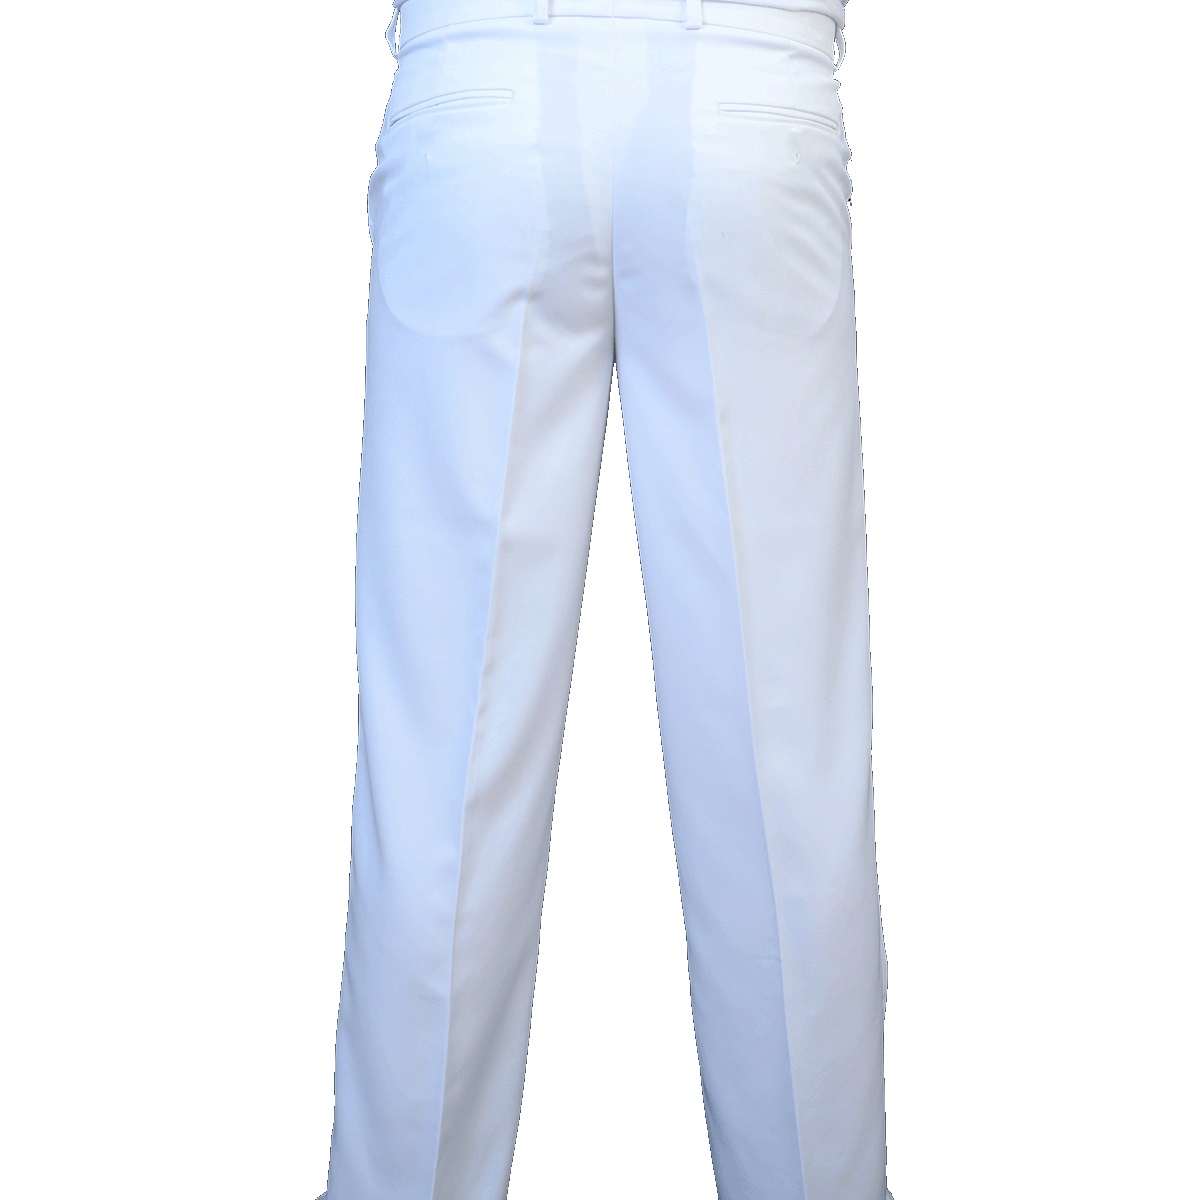 calça masculina branca